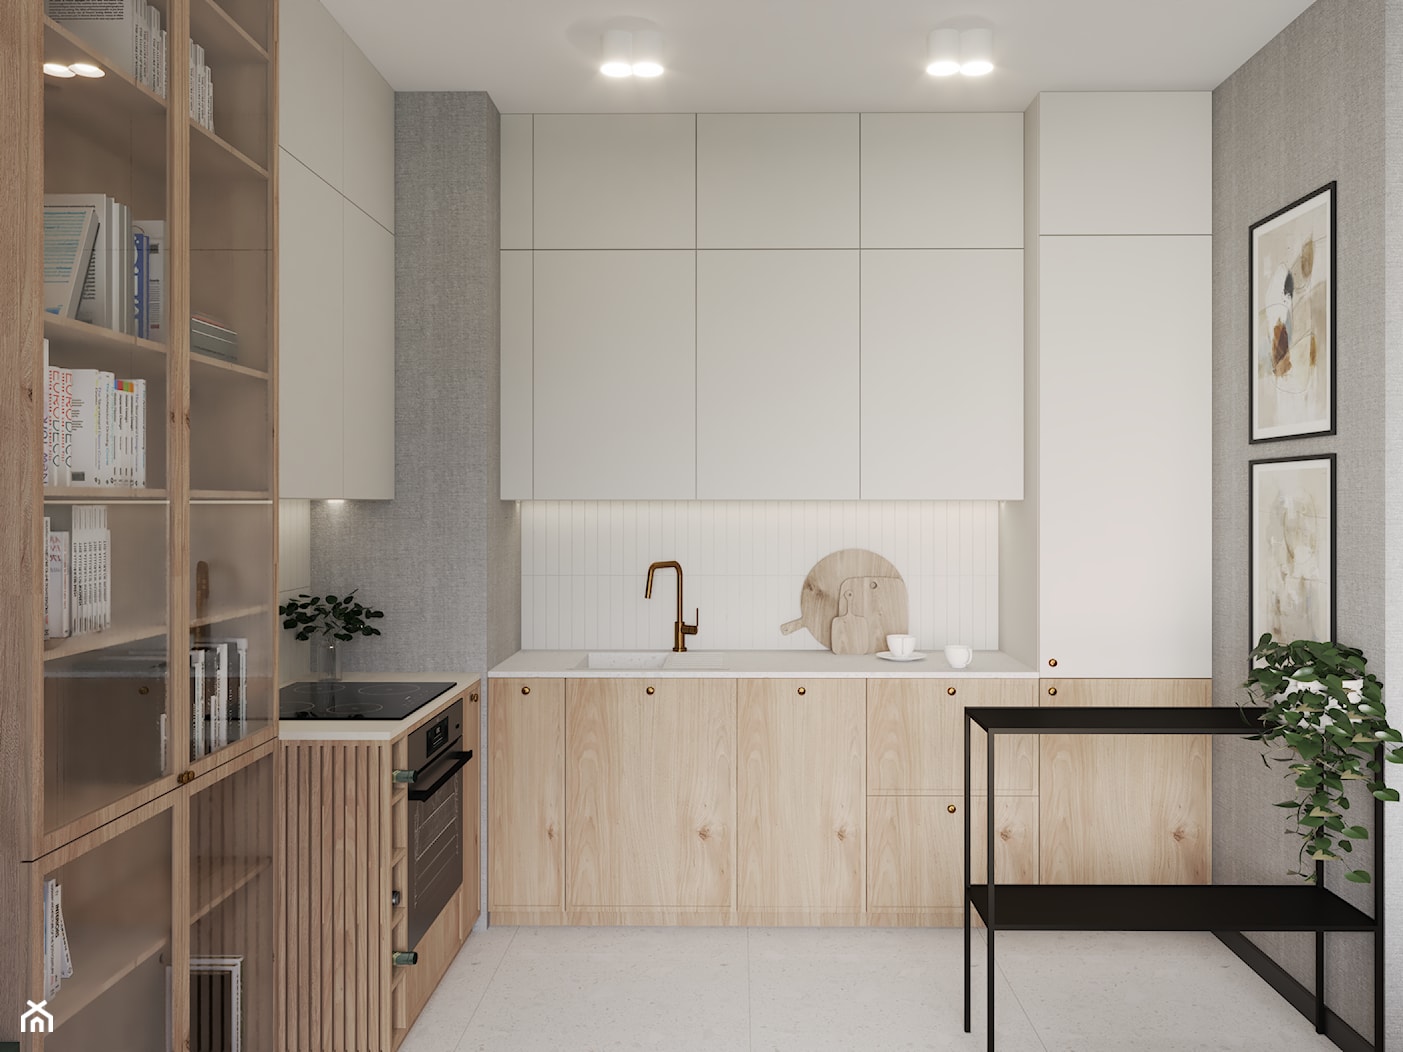 Projekt wnętrza salonu z aneksem kuchennem mieszkania w Brodnicy - zdjęcie od Projektowanie Wnętrz Weronika Lesińska - Homebook